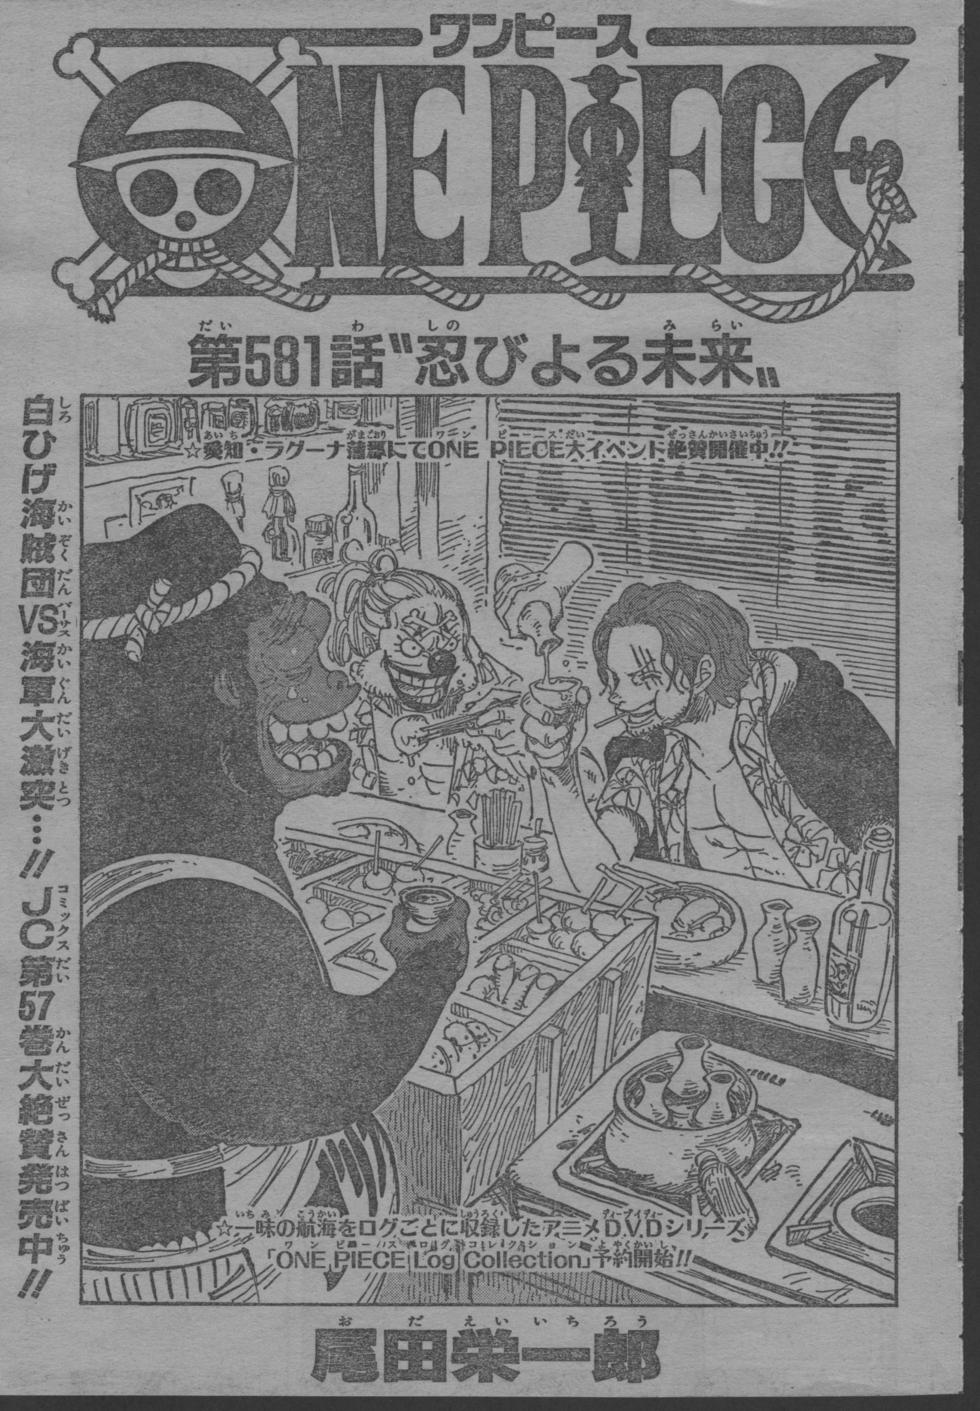 ワンピース One Piece 第581話 忍びよる未来 ネタバレ感想 しあわせのマテリア